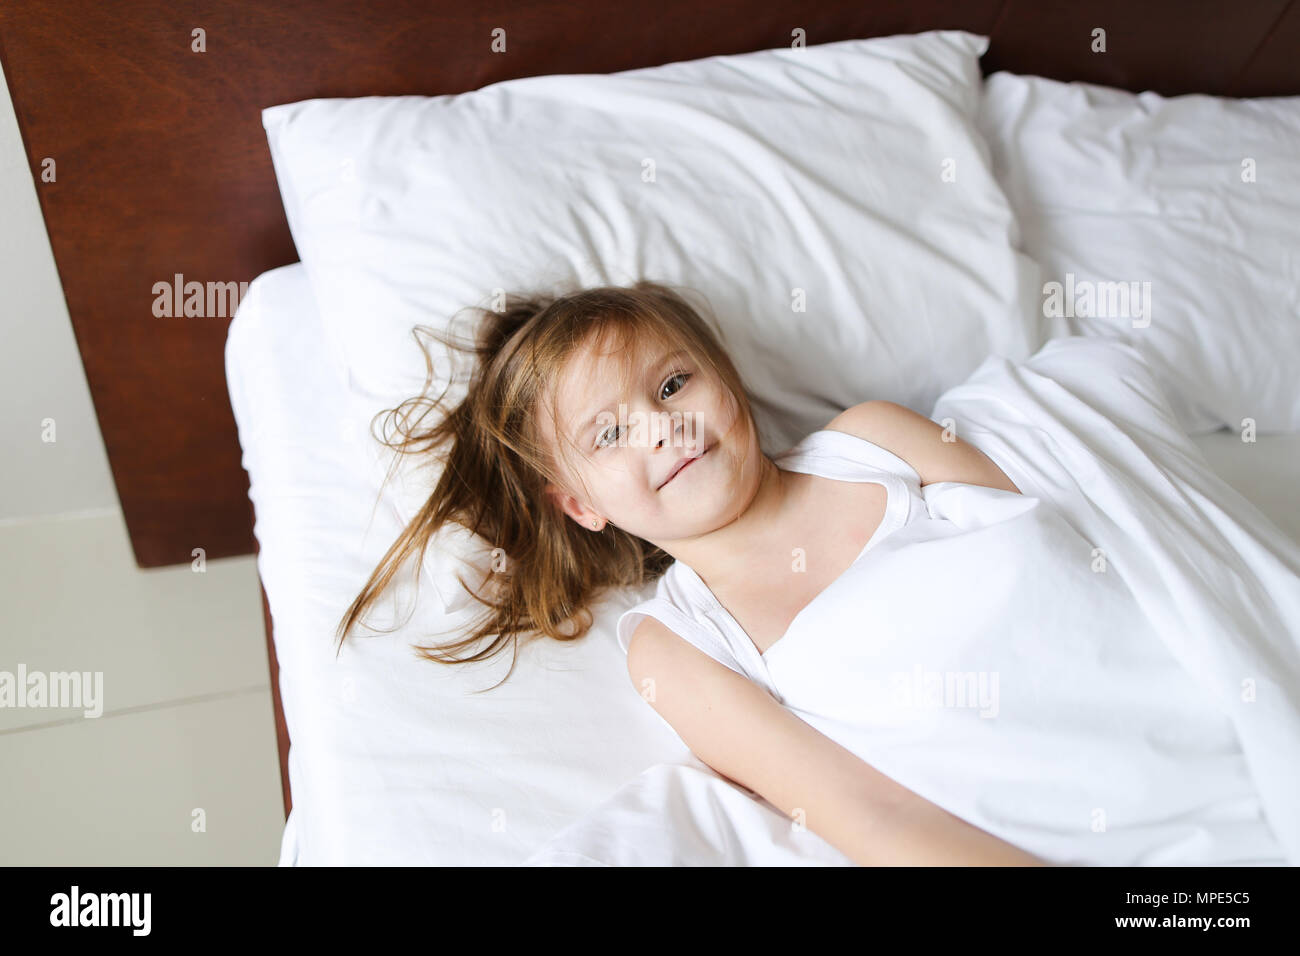 little girl on bed